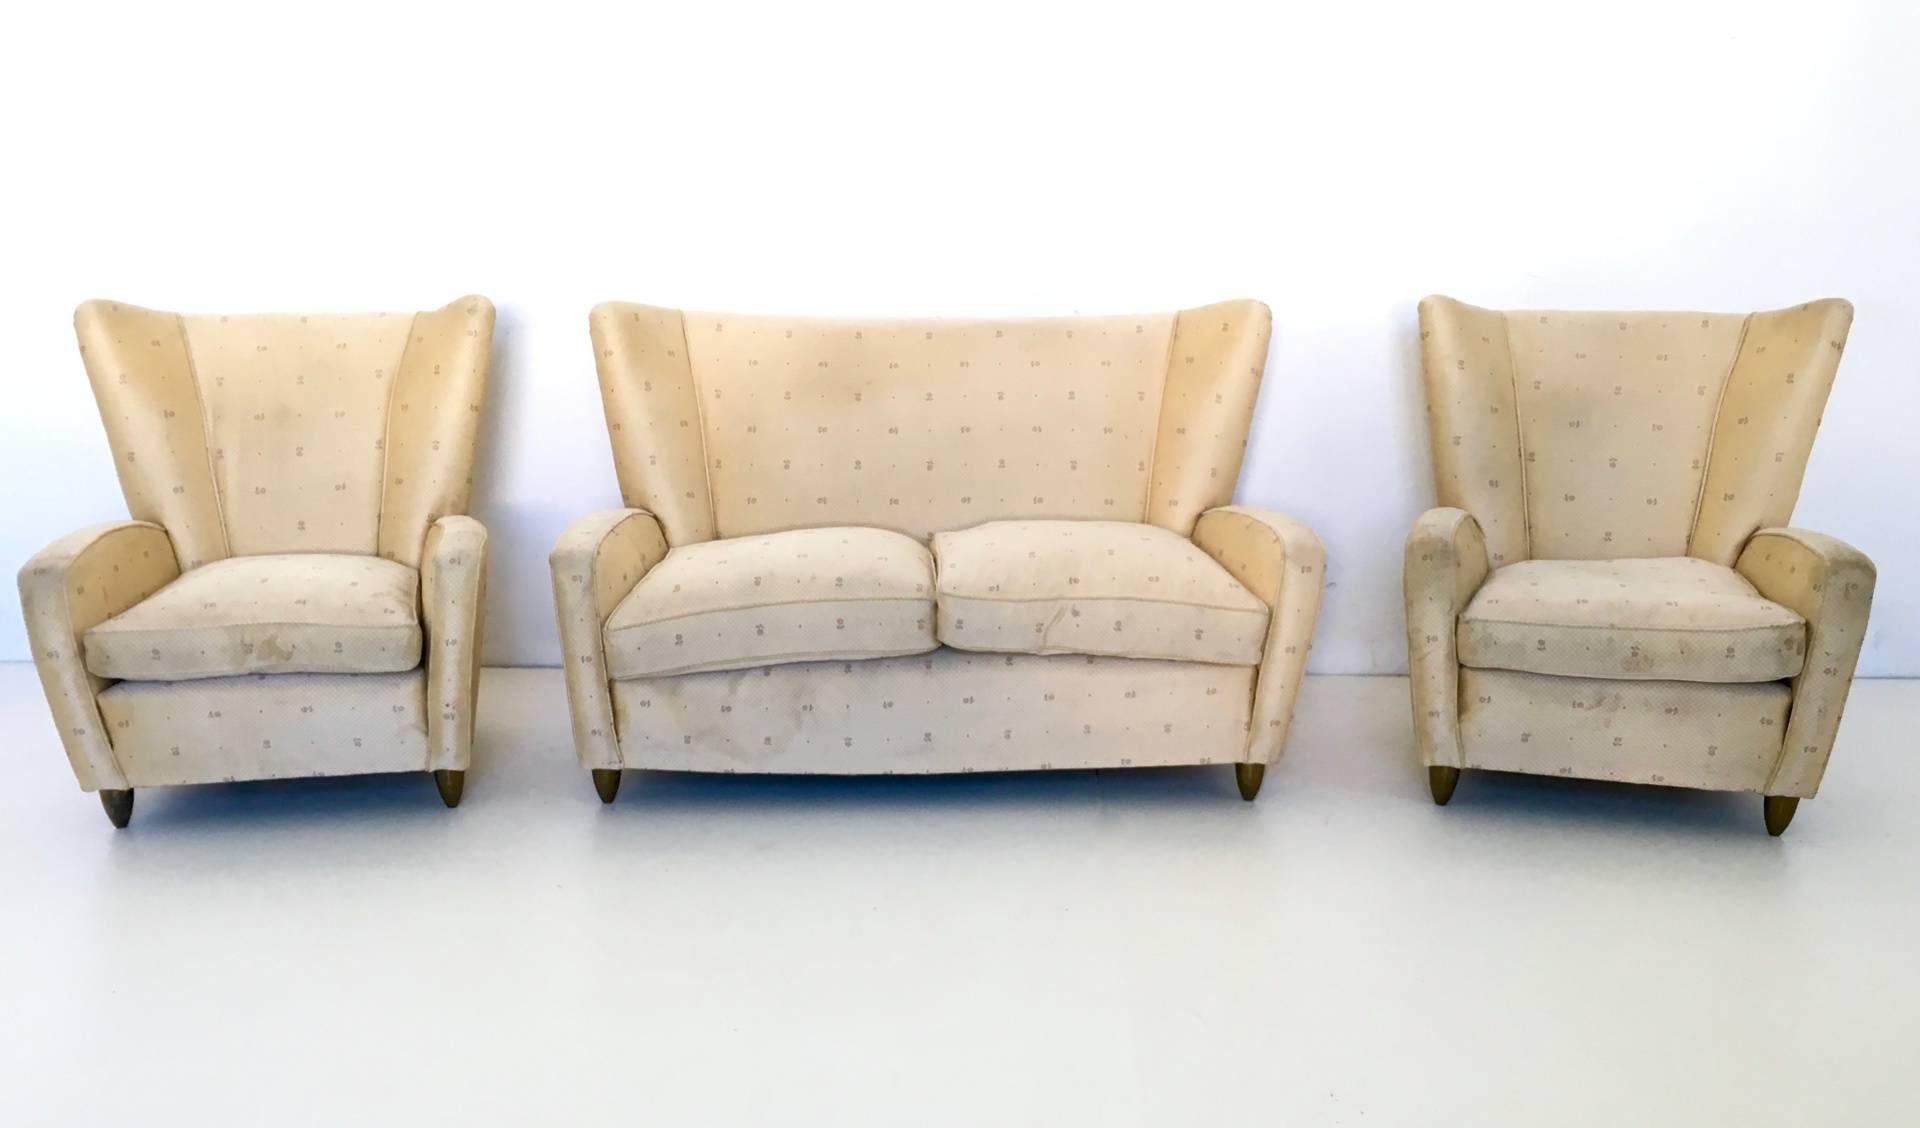 Hergestellt in Italien, 1950er Jahre.
Die Besonderheit dieser Garnitur ist, dass sowohl das Sofa als auch die Sessel mit konischen Füßen aus Messing ausgestattet sind.
Ihr Stoff ist original, und wie Sie sehen können, müssen sie neu gepolstert